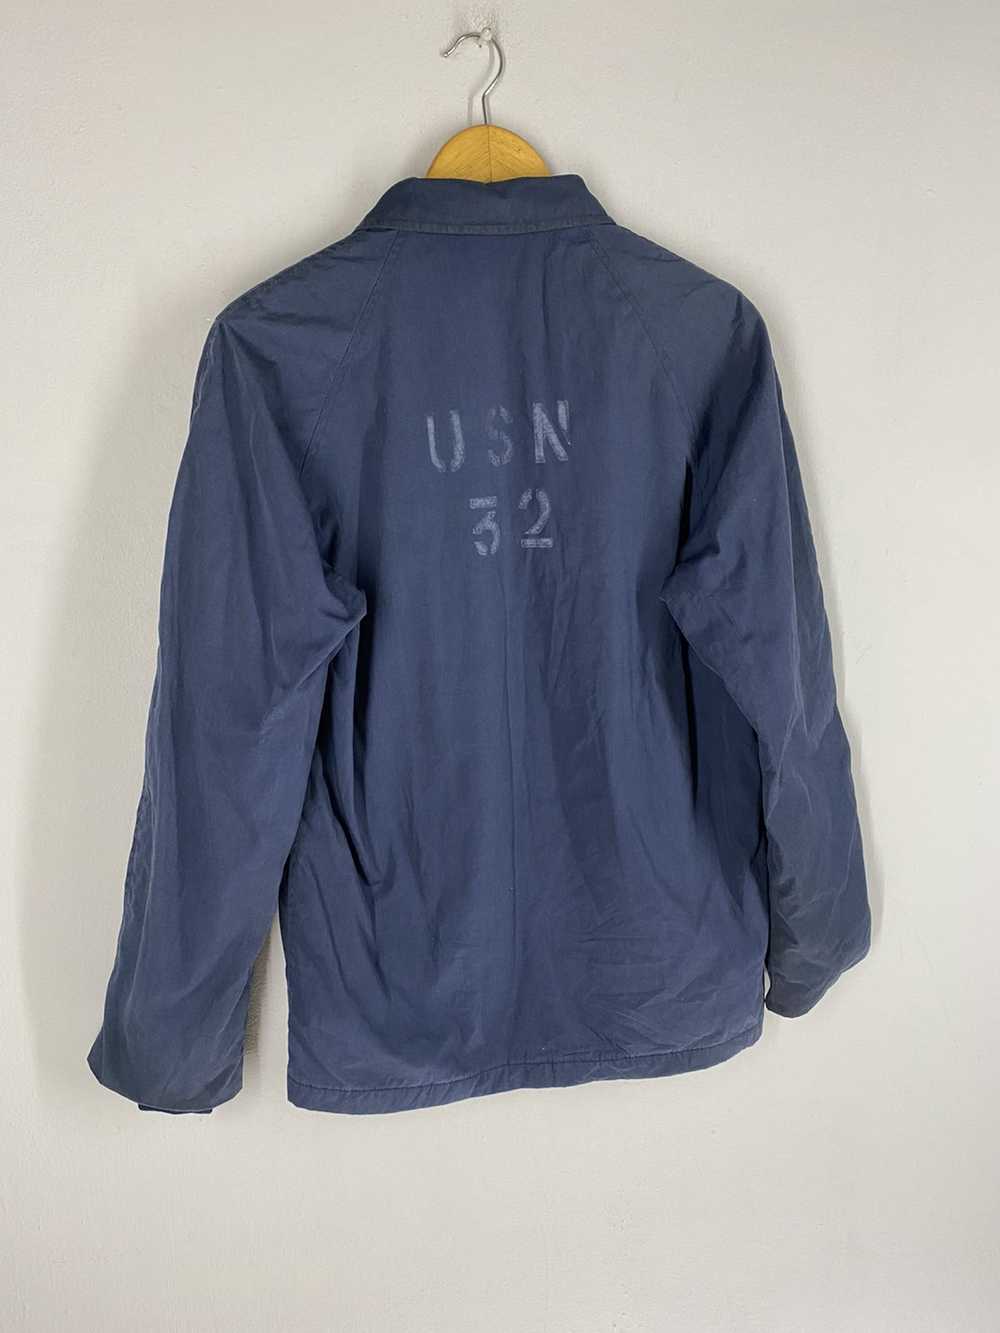 Usn Vintage 80s USN 32 Top Zipper Jacket - image 3